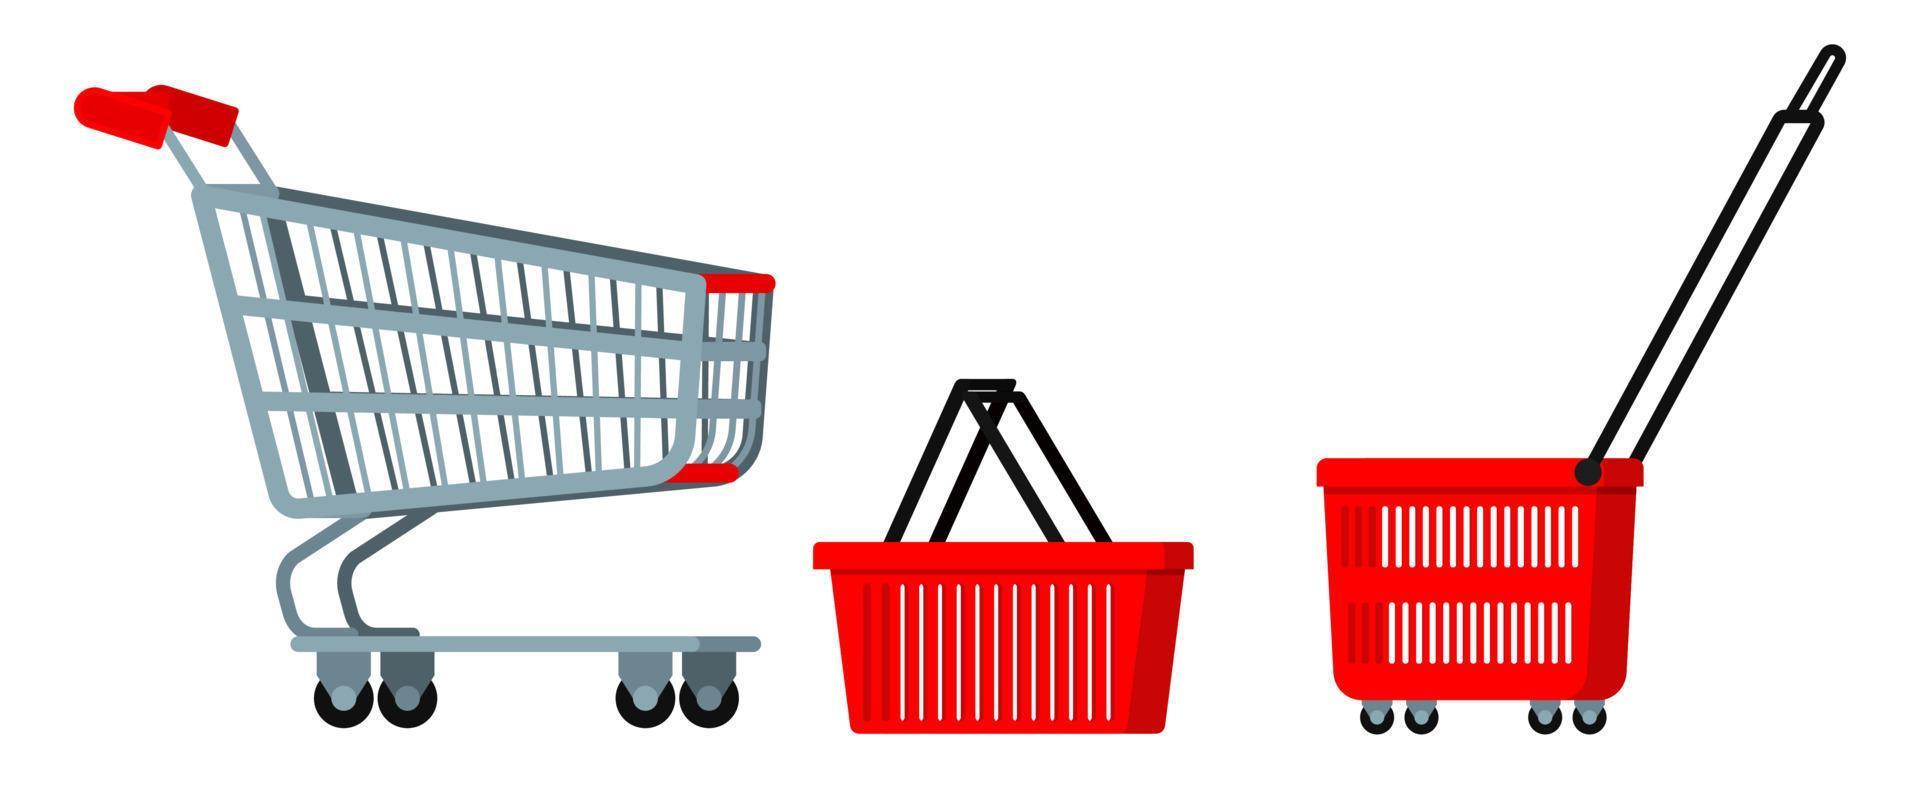 carrinho de carrinho de metal cromado de supermercado vazio com rodas, conjunto de ícones de cesta de compras plasyic vermelho vetor